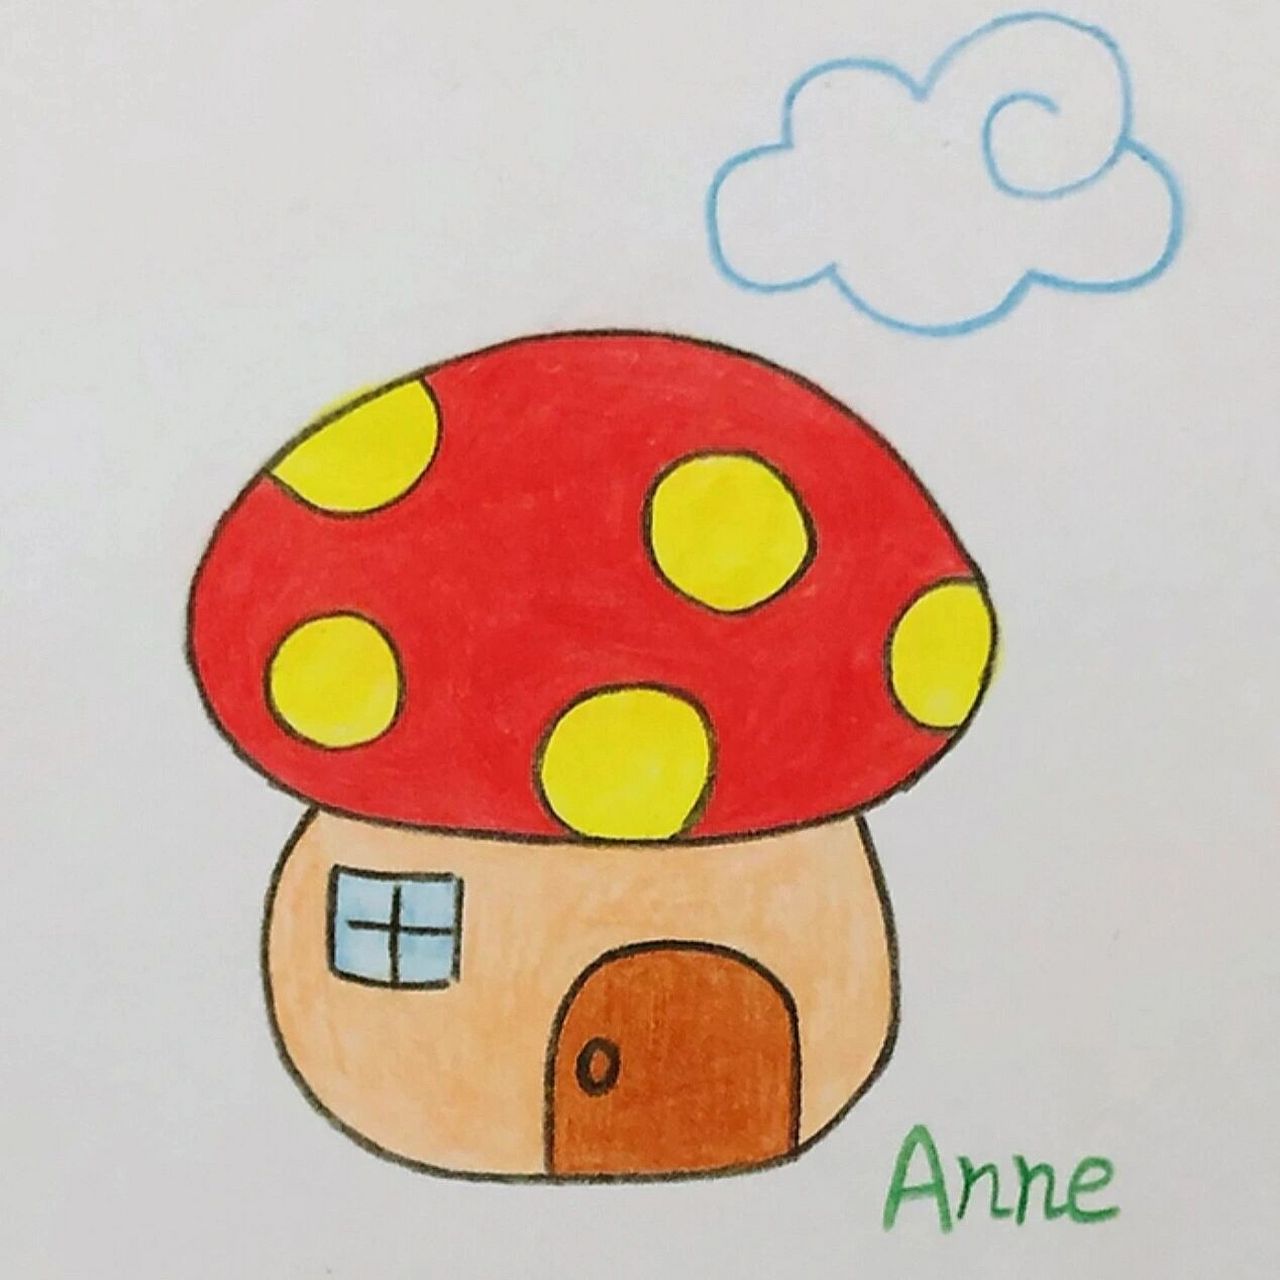 彩色蘑菇房子简笔画图片